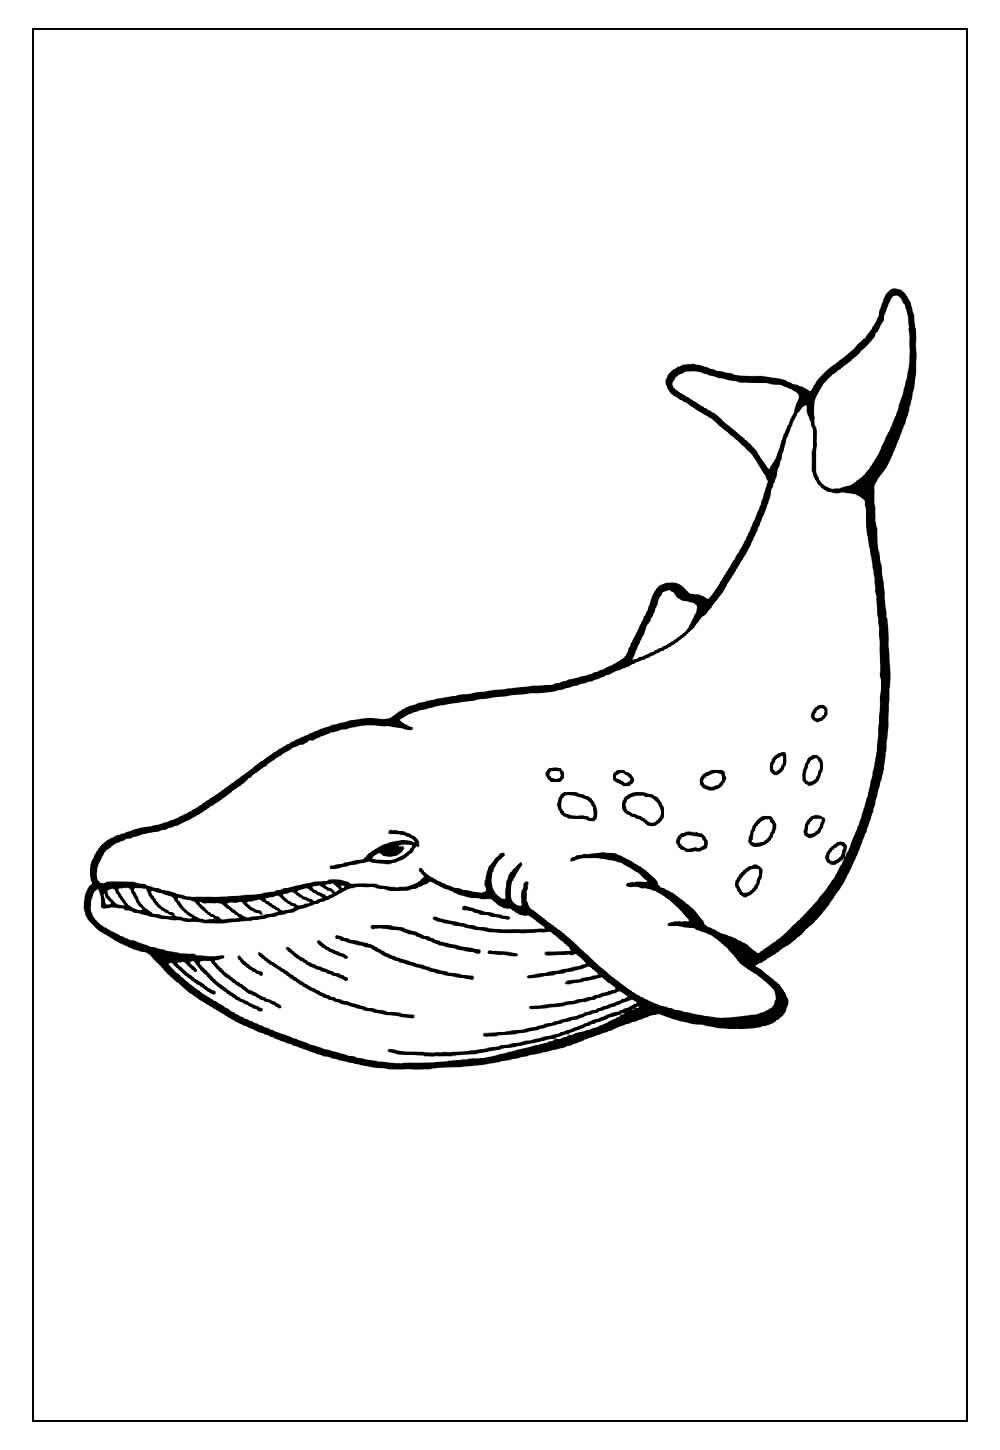 Desenho para colorir de baleia com bico em preto e branco · Creative Fabrica